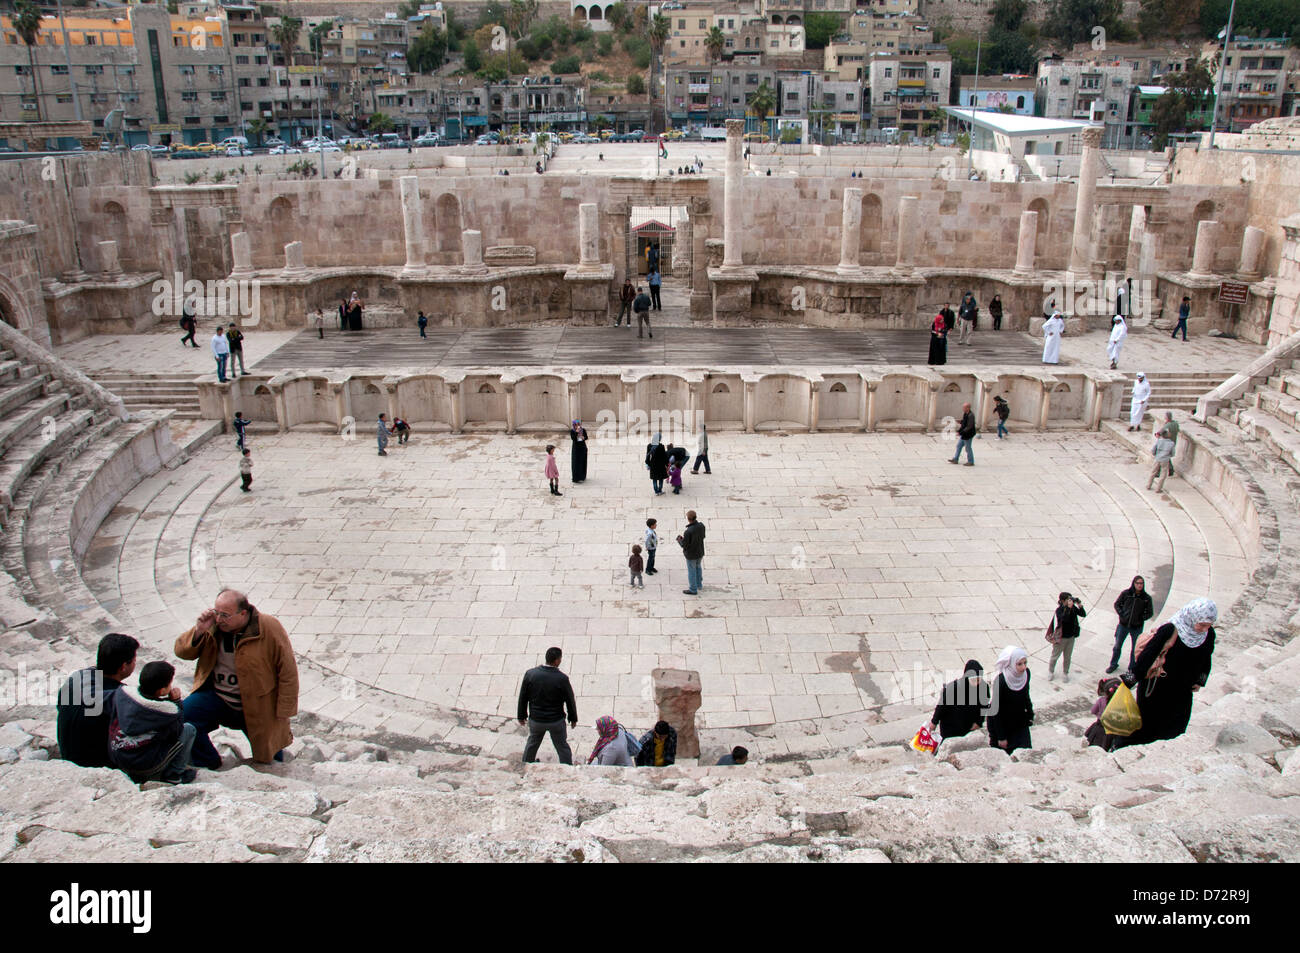 La Jordanie, Amman. Amphithéâtre romain avec les visiteurs Banque D'Images